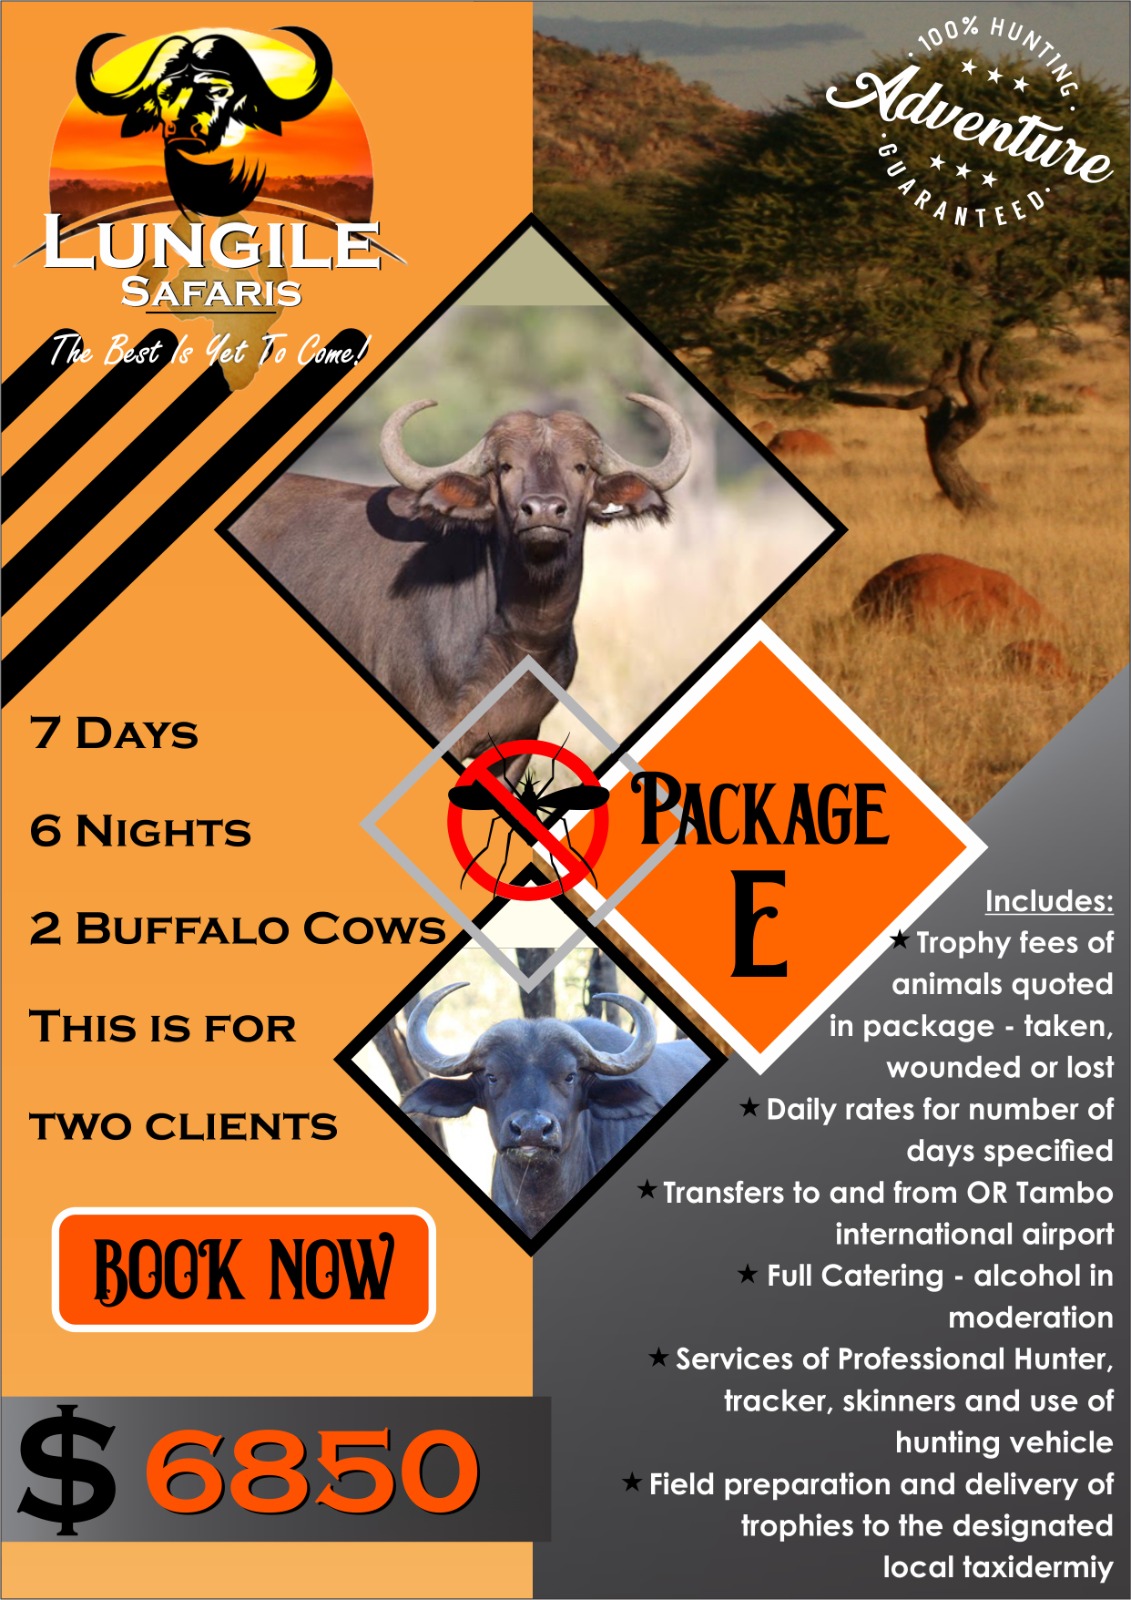 Lungile Safaris Package E